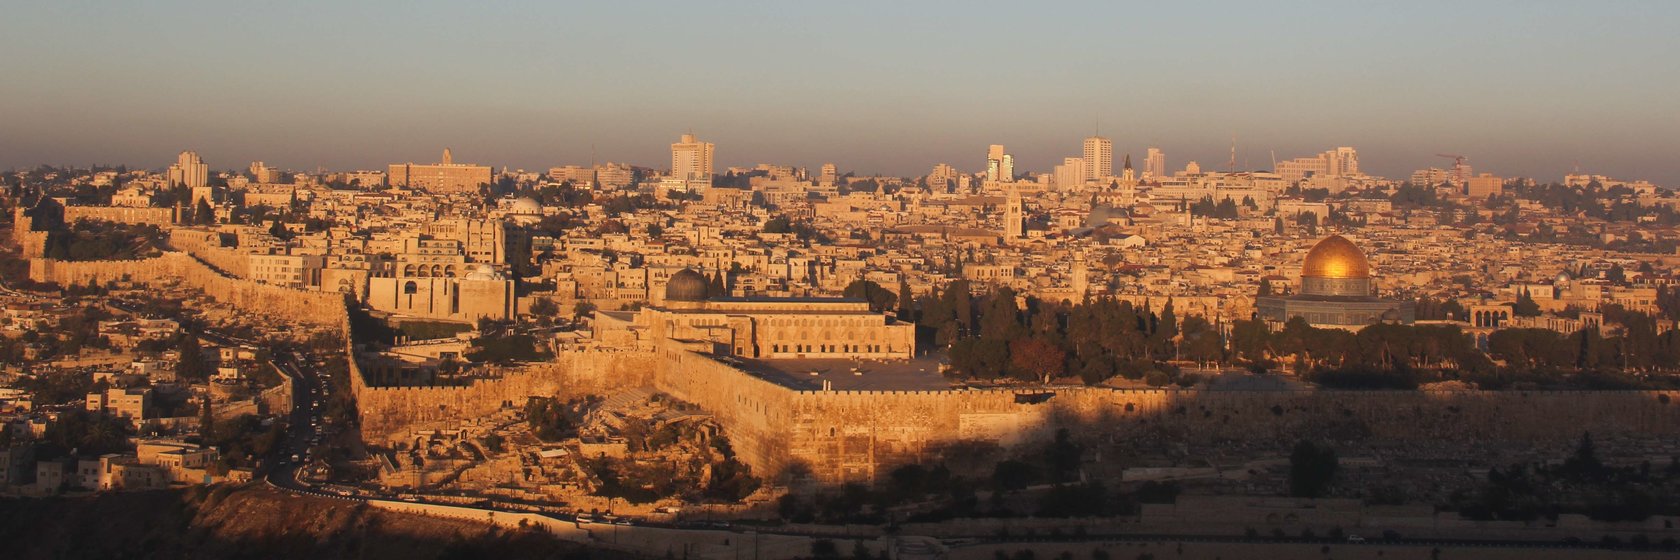 Hotely Jeruzalém a okolí